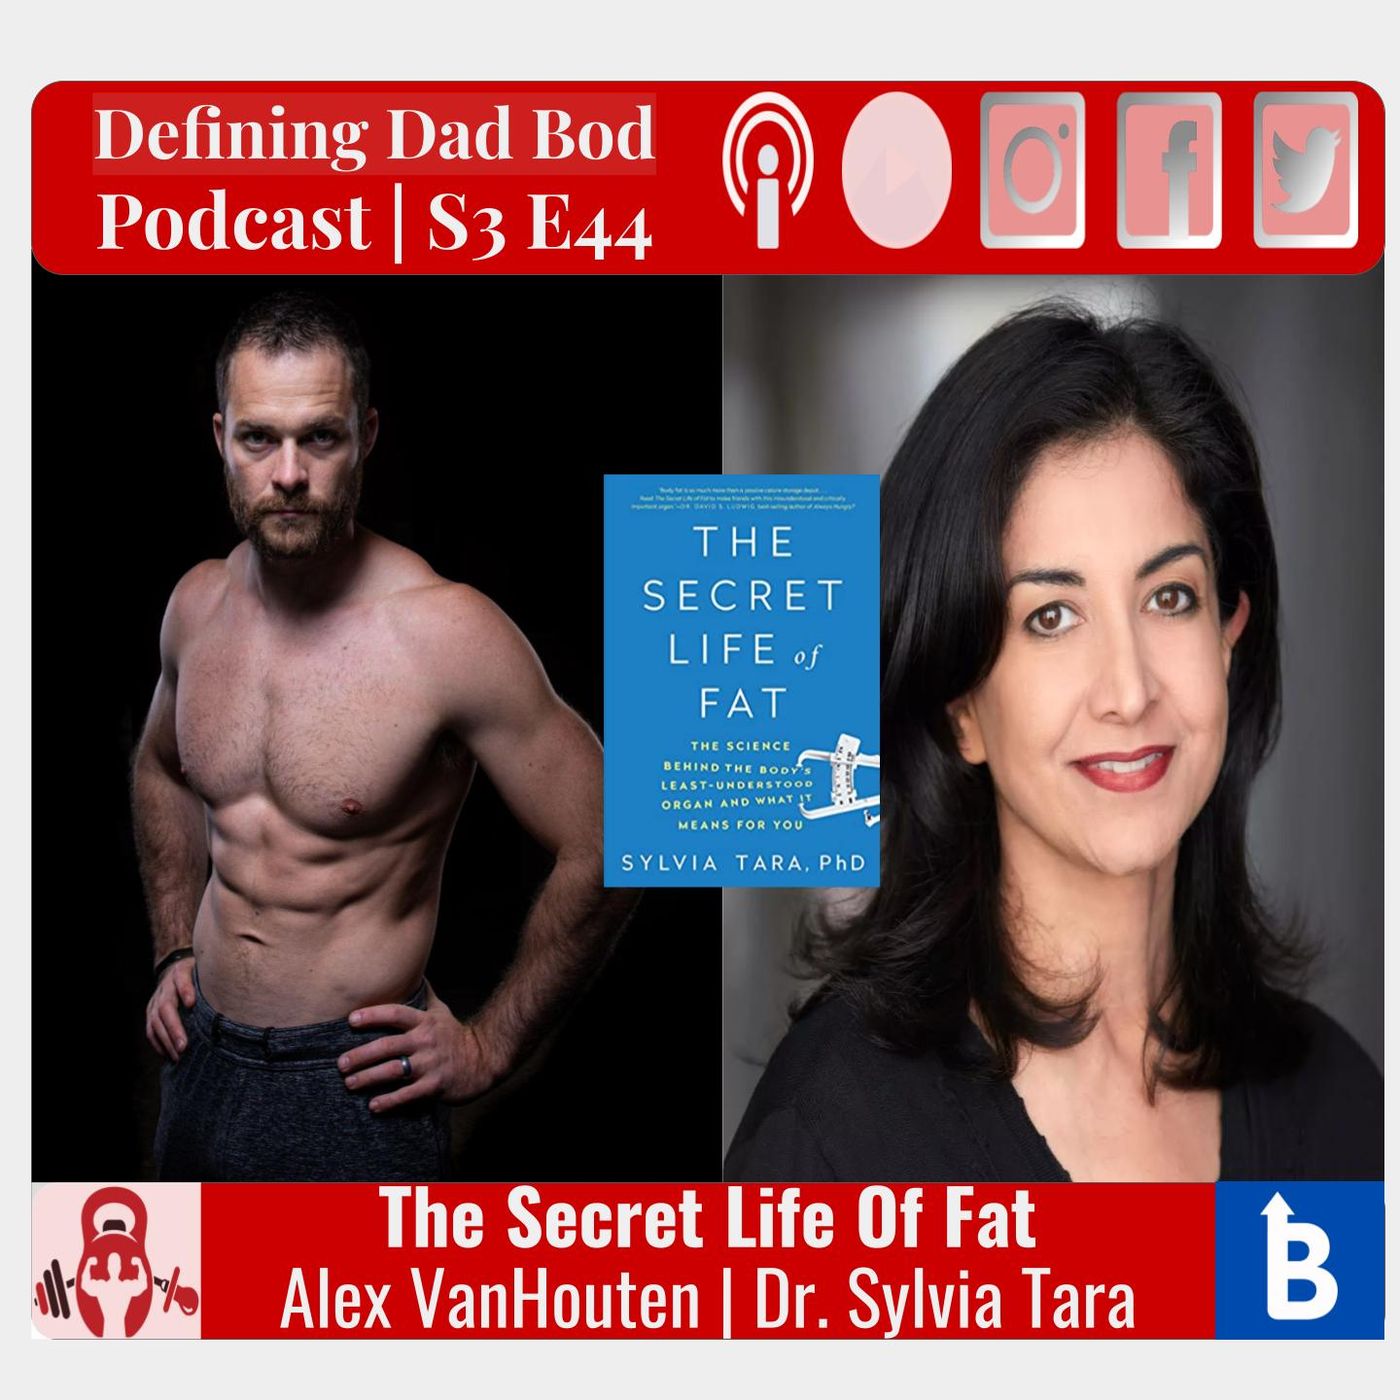 S3 E44 - The Secret Life Of Fat | Dr. Sylvia Tara